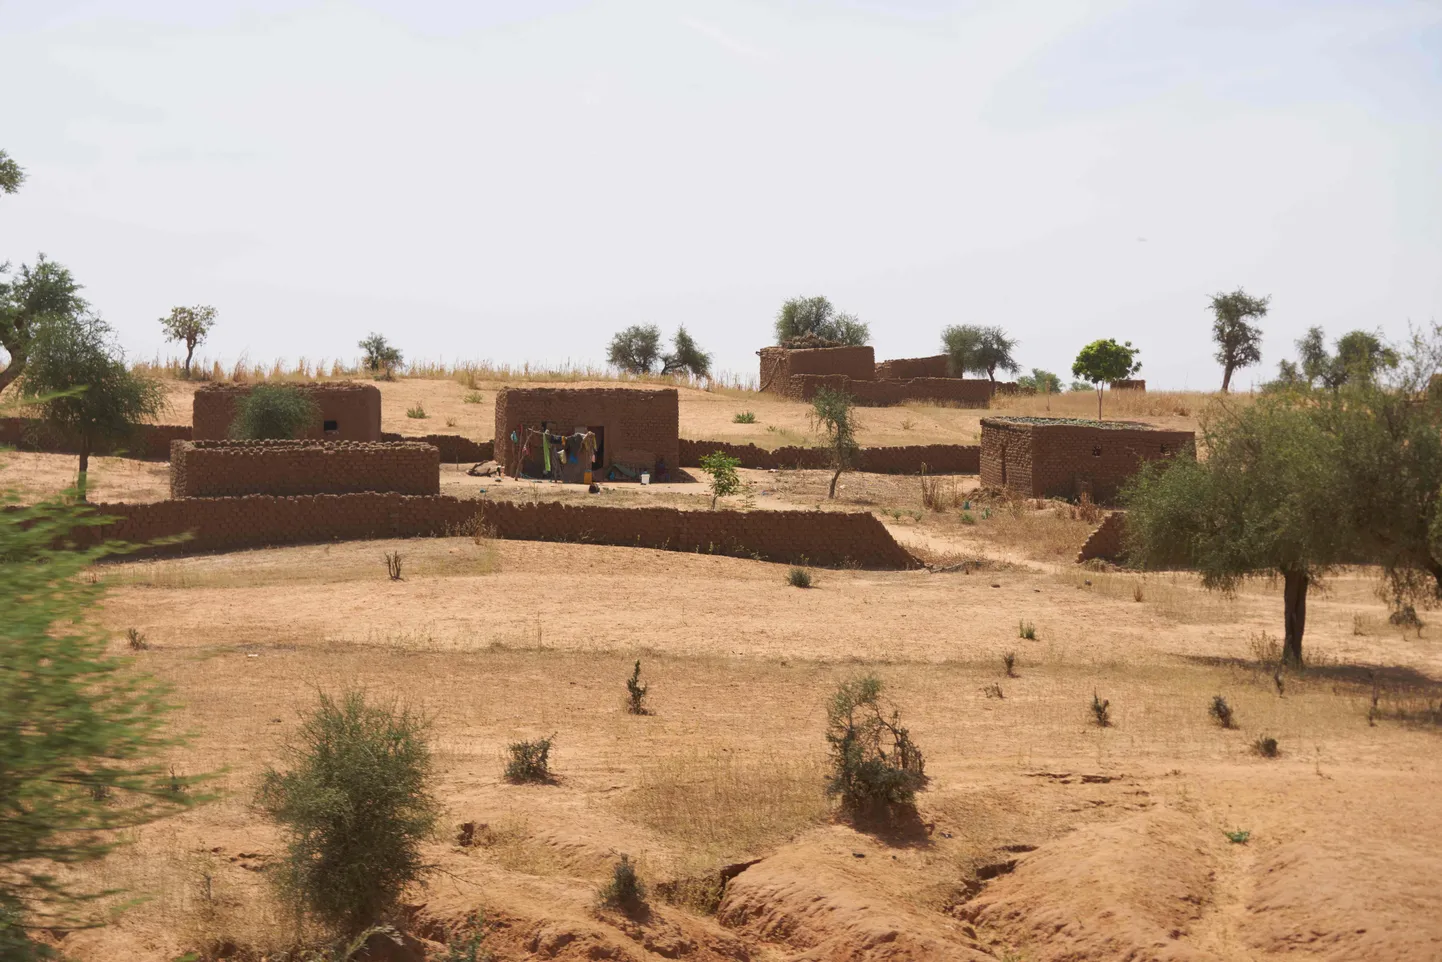 Vaade külale Burkina Faso põhjaosas Soumi piirkonnas.